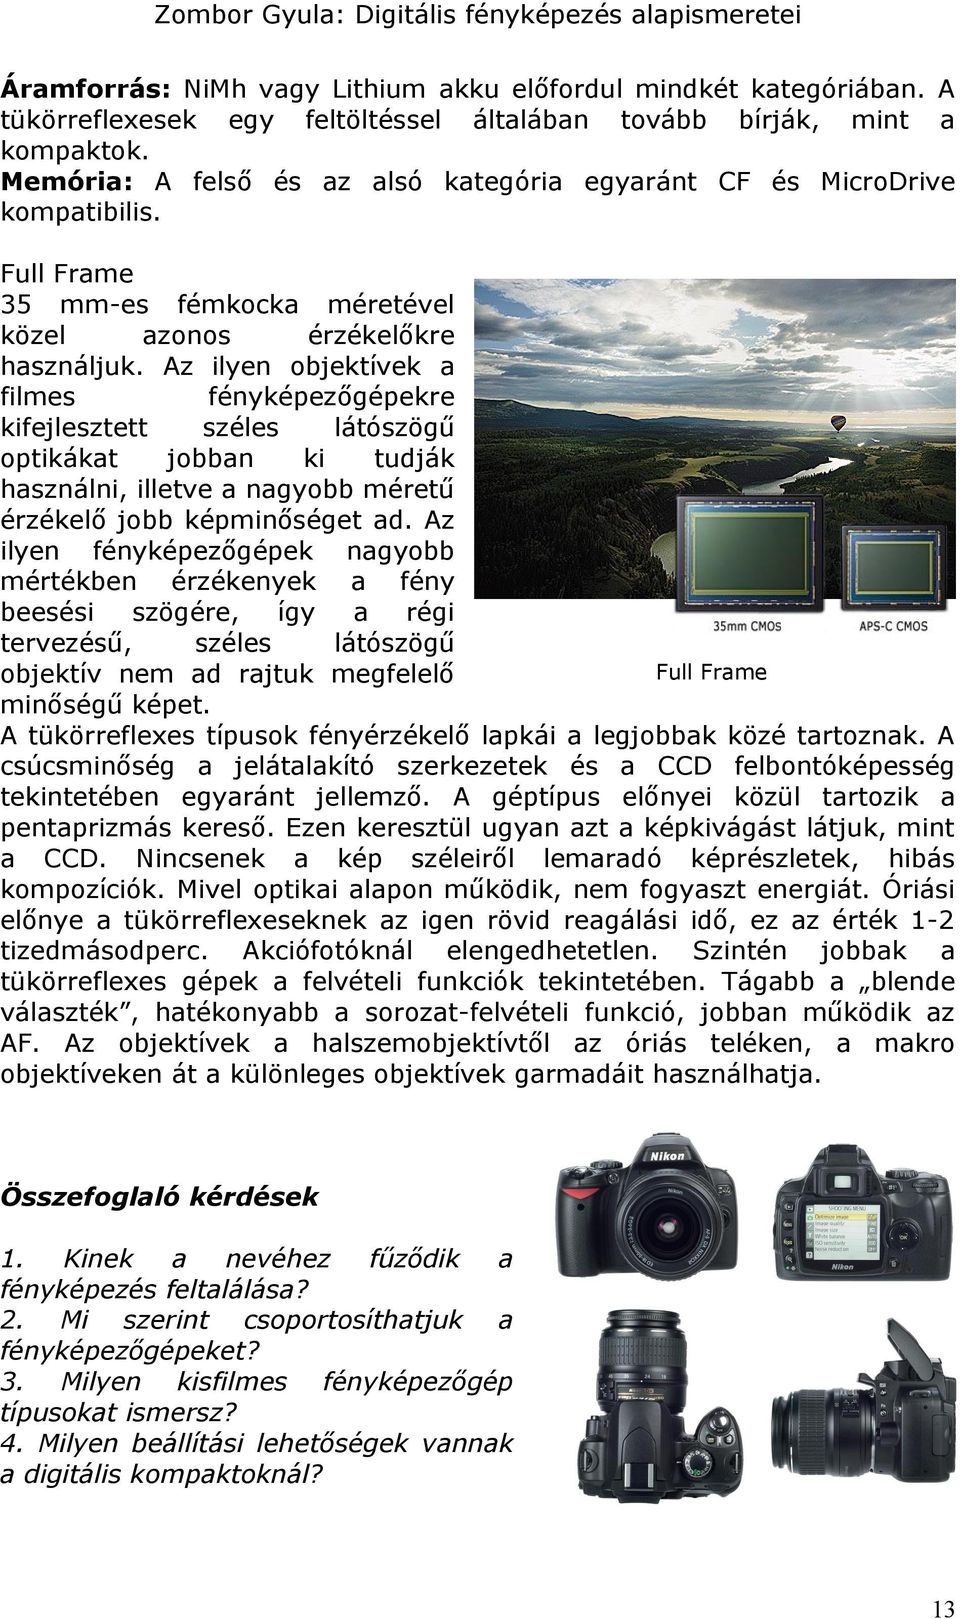 Digitális fényképezés alapismeretei. 1. modul Digitális fényképezés  alapismeretei - PDF Ingyenes letöltés